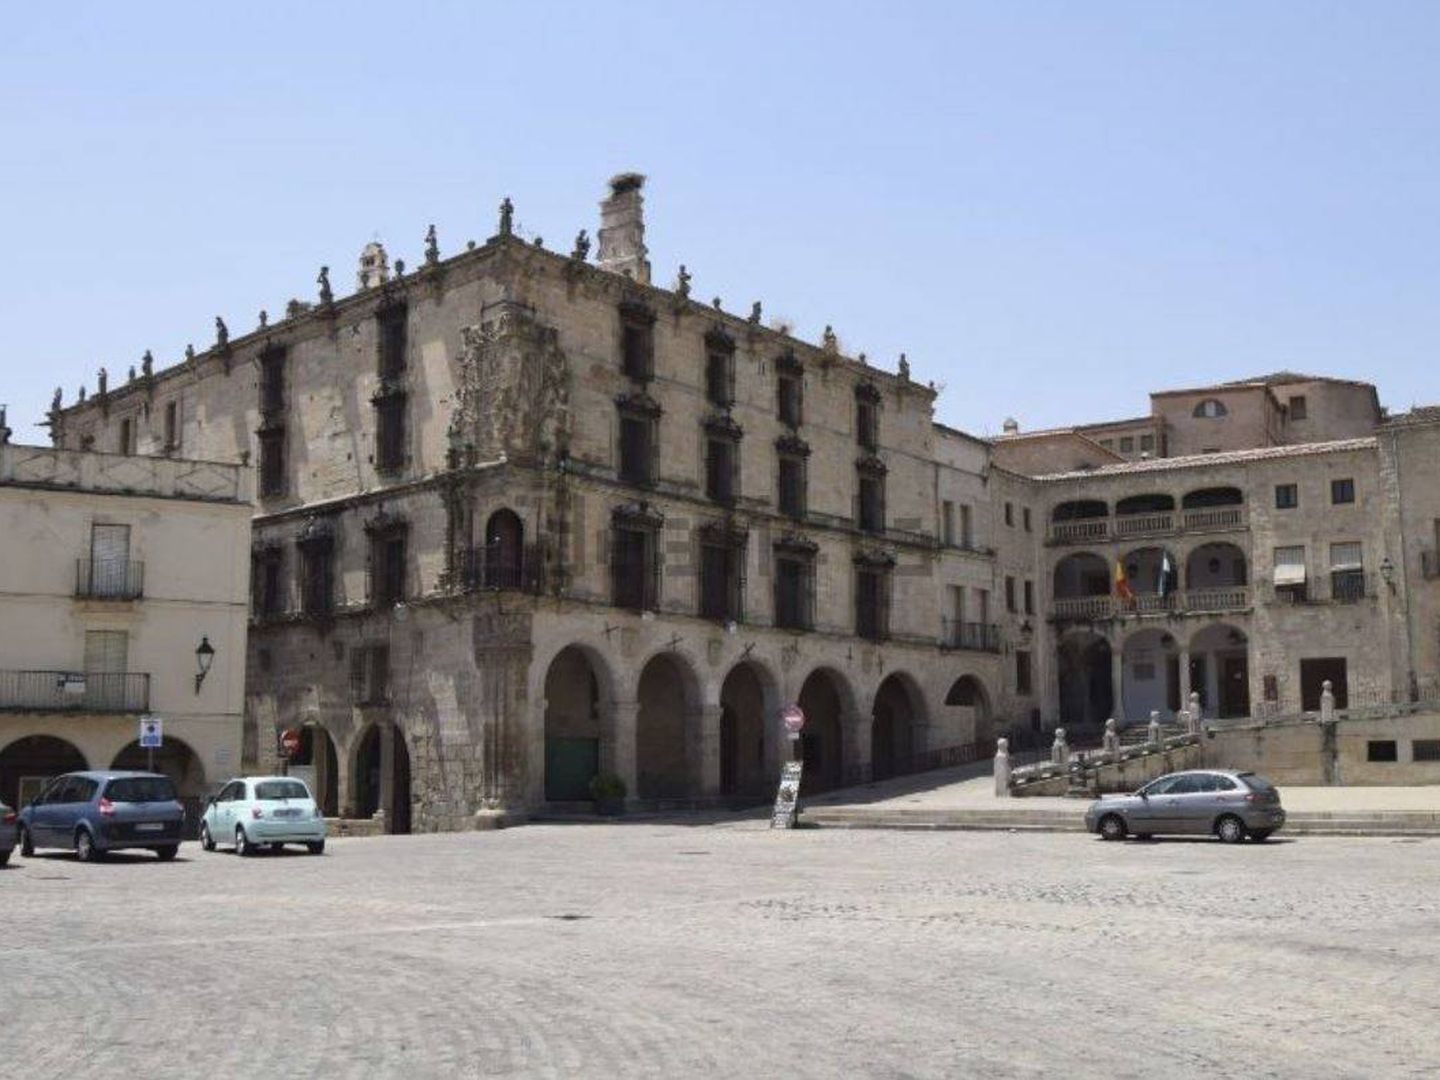 Vea aquí toda la información sobre esta casa palacio en Trujillo, Cáceres.